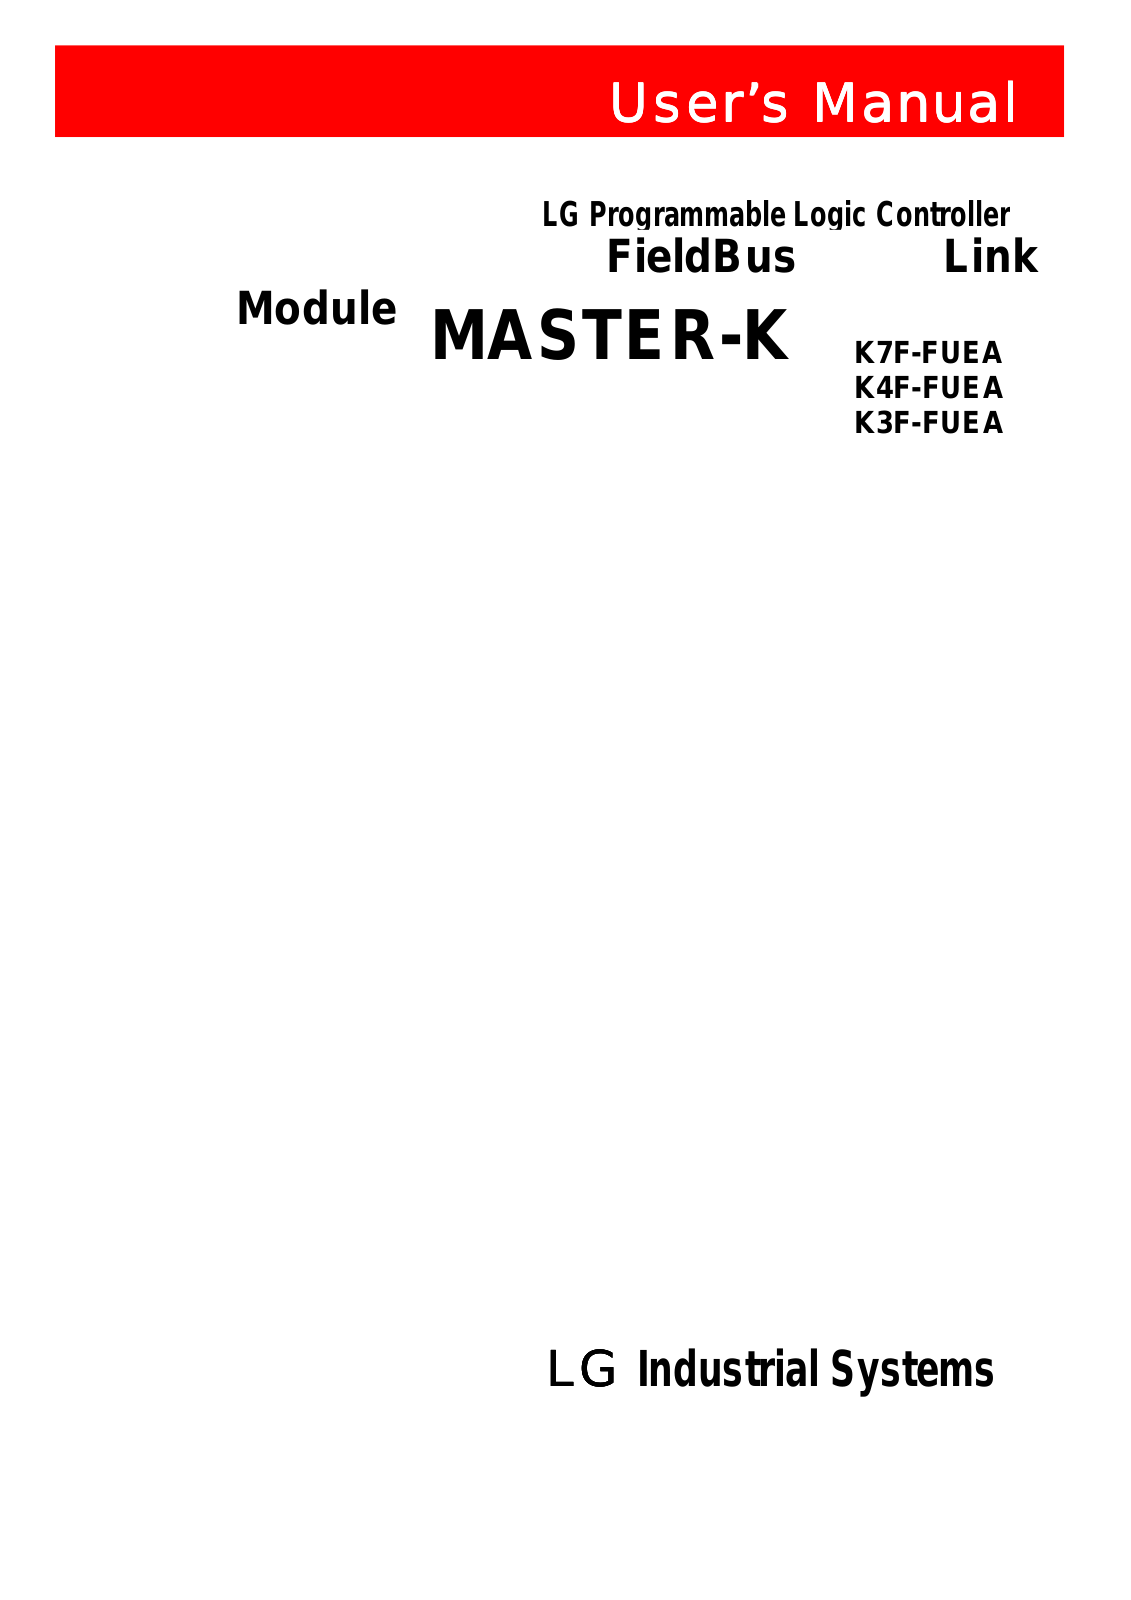 LG Electronics K3F-FUEA, K4F-FUEA, K7F-FUEA User Manual